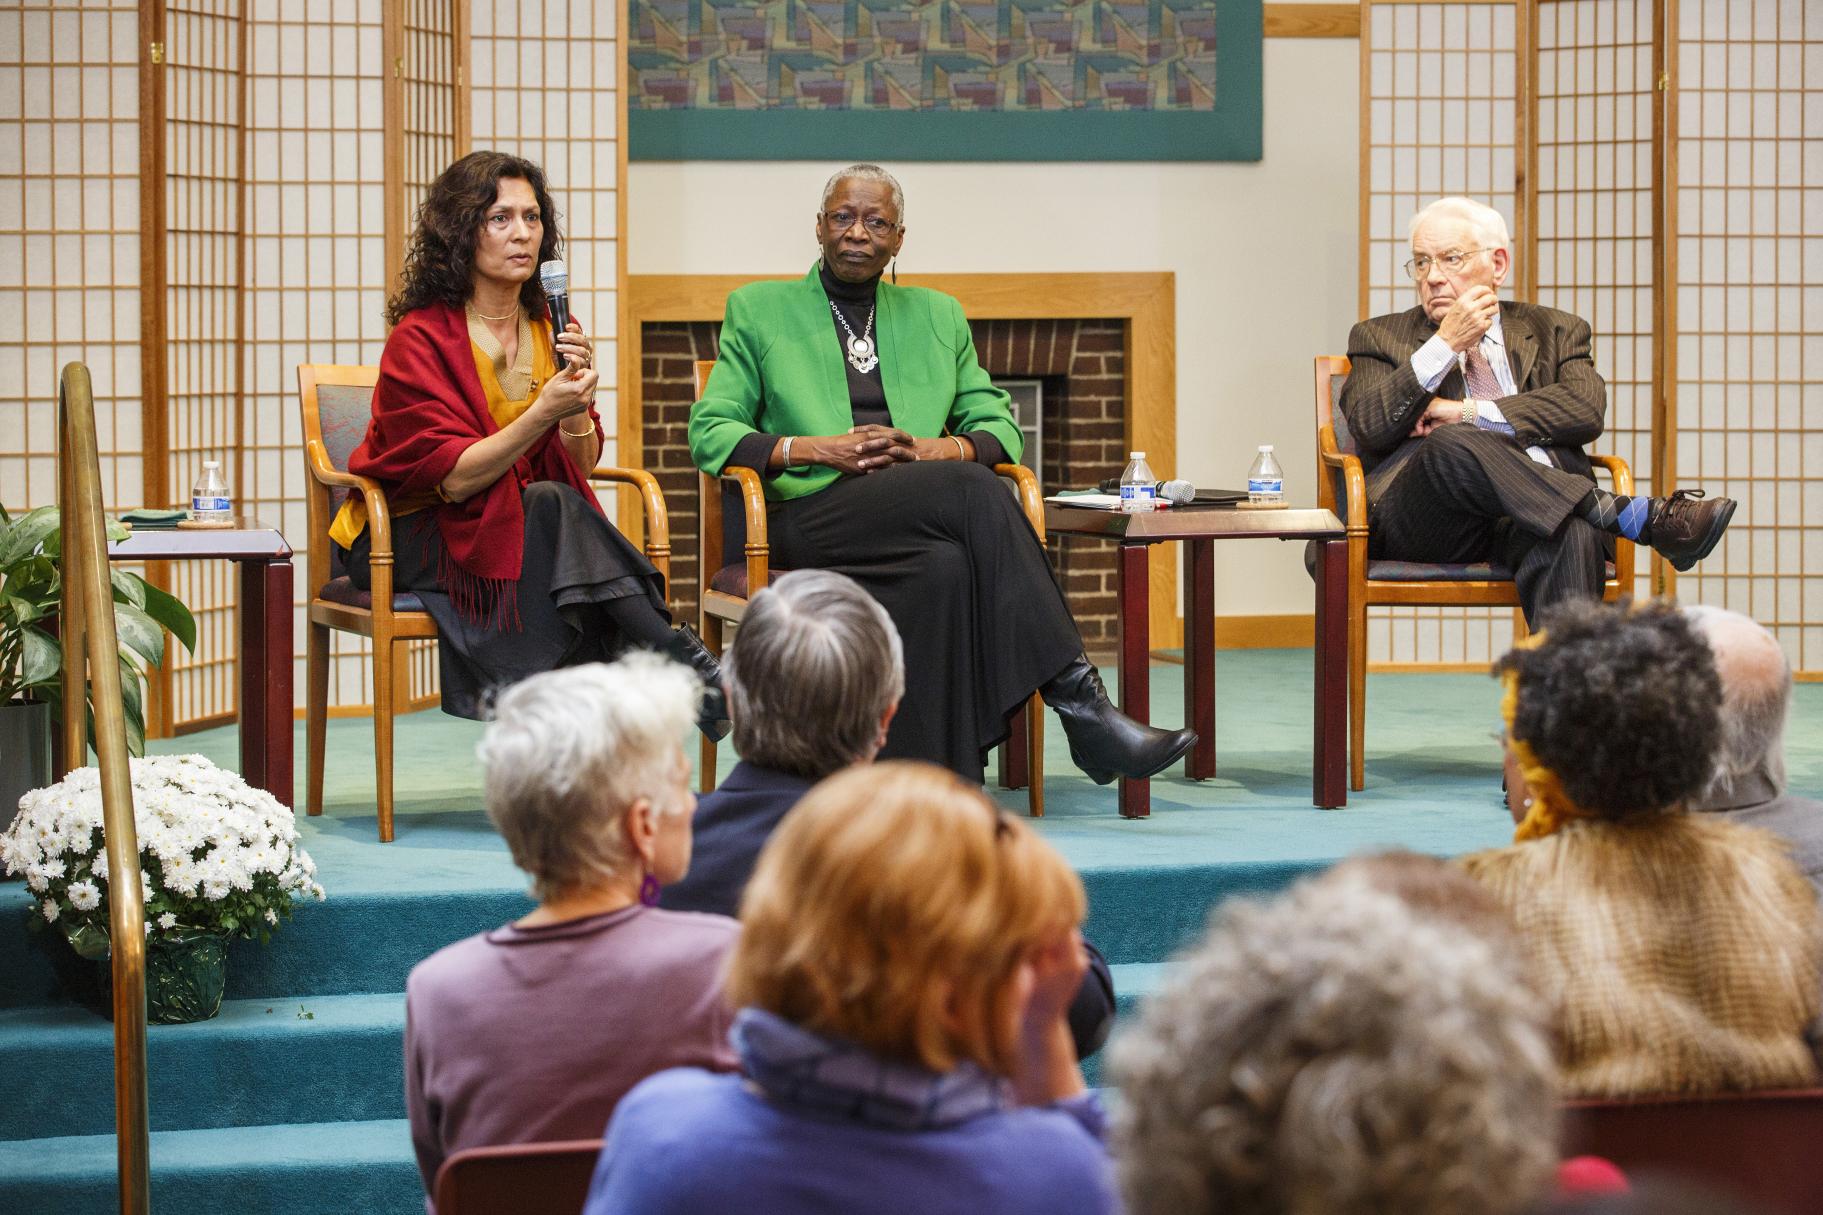 2015 Ikeda Forum panelists speak on stage